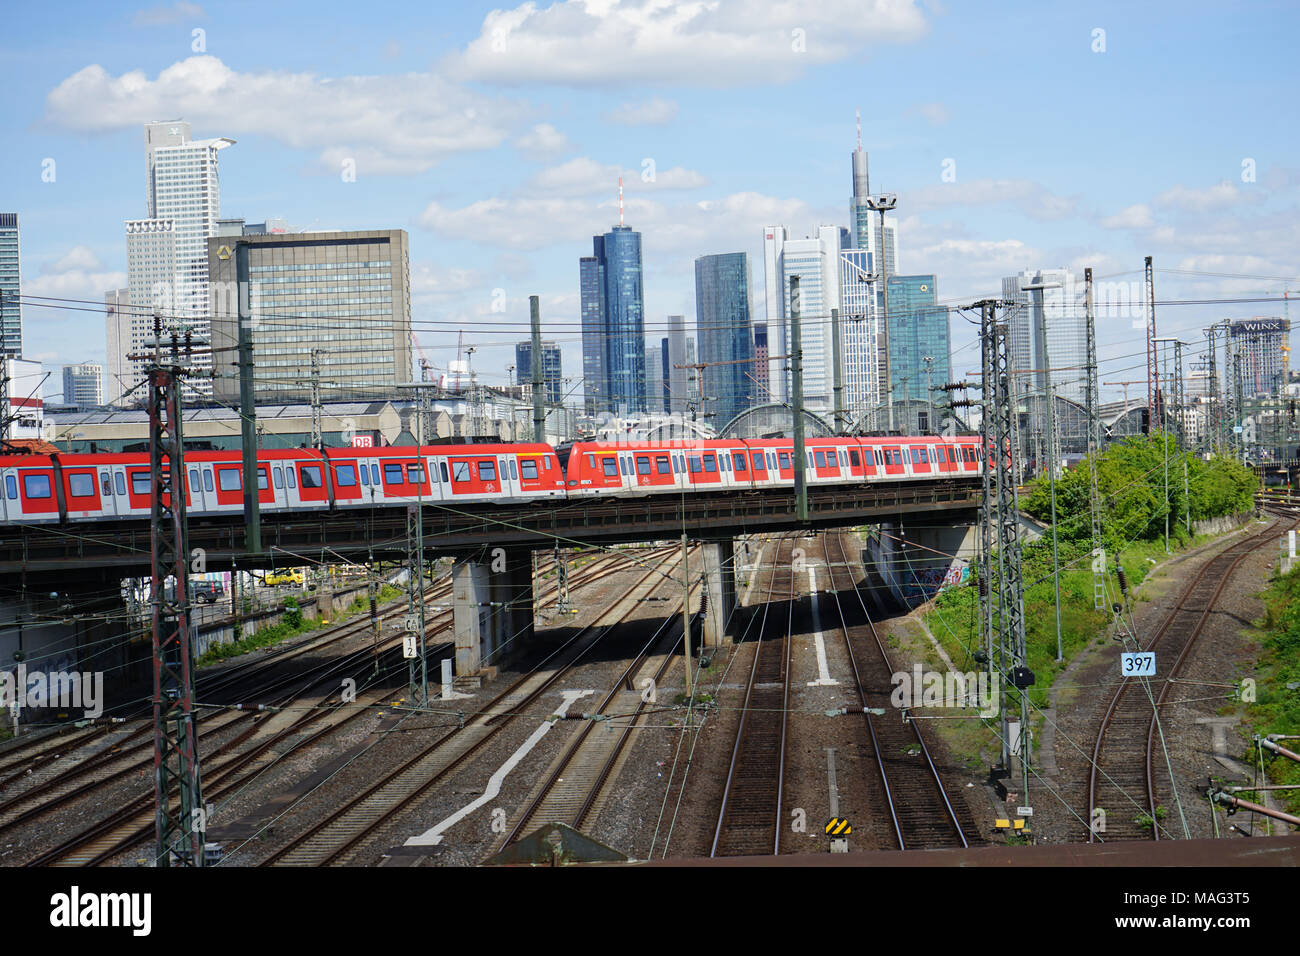 S-Bahn fährt über eine Brücke, Gleise zum Frankfurter Hauptbahnhof, Skyline, Frankfurt, Deutschland, Europa Stock Photo